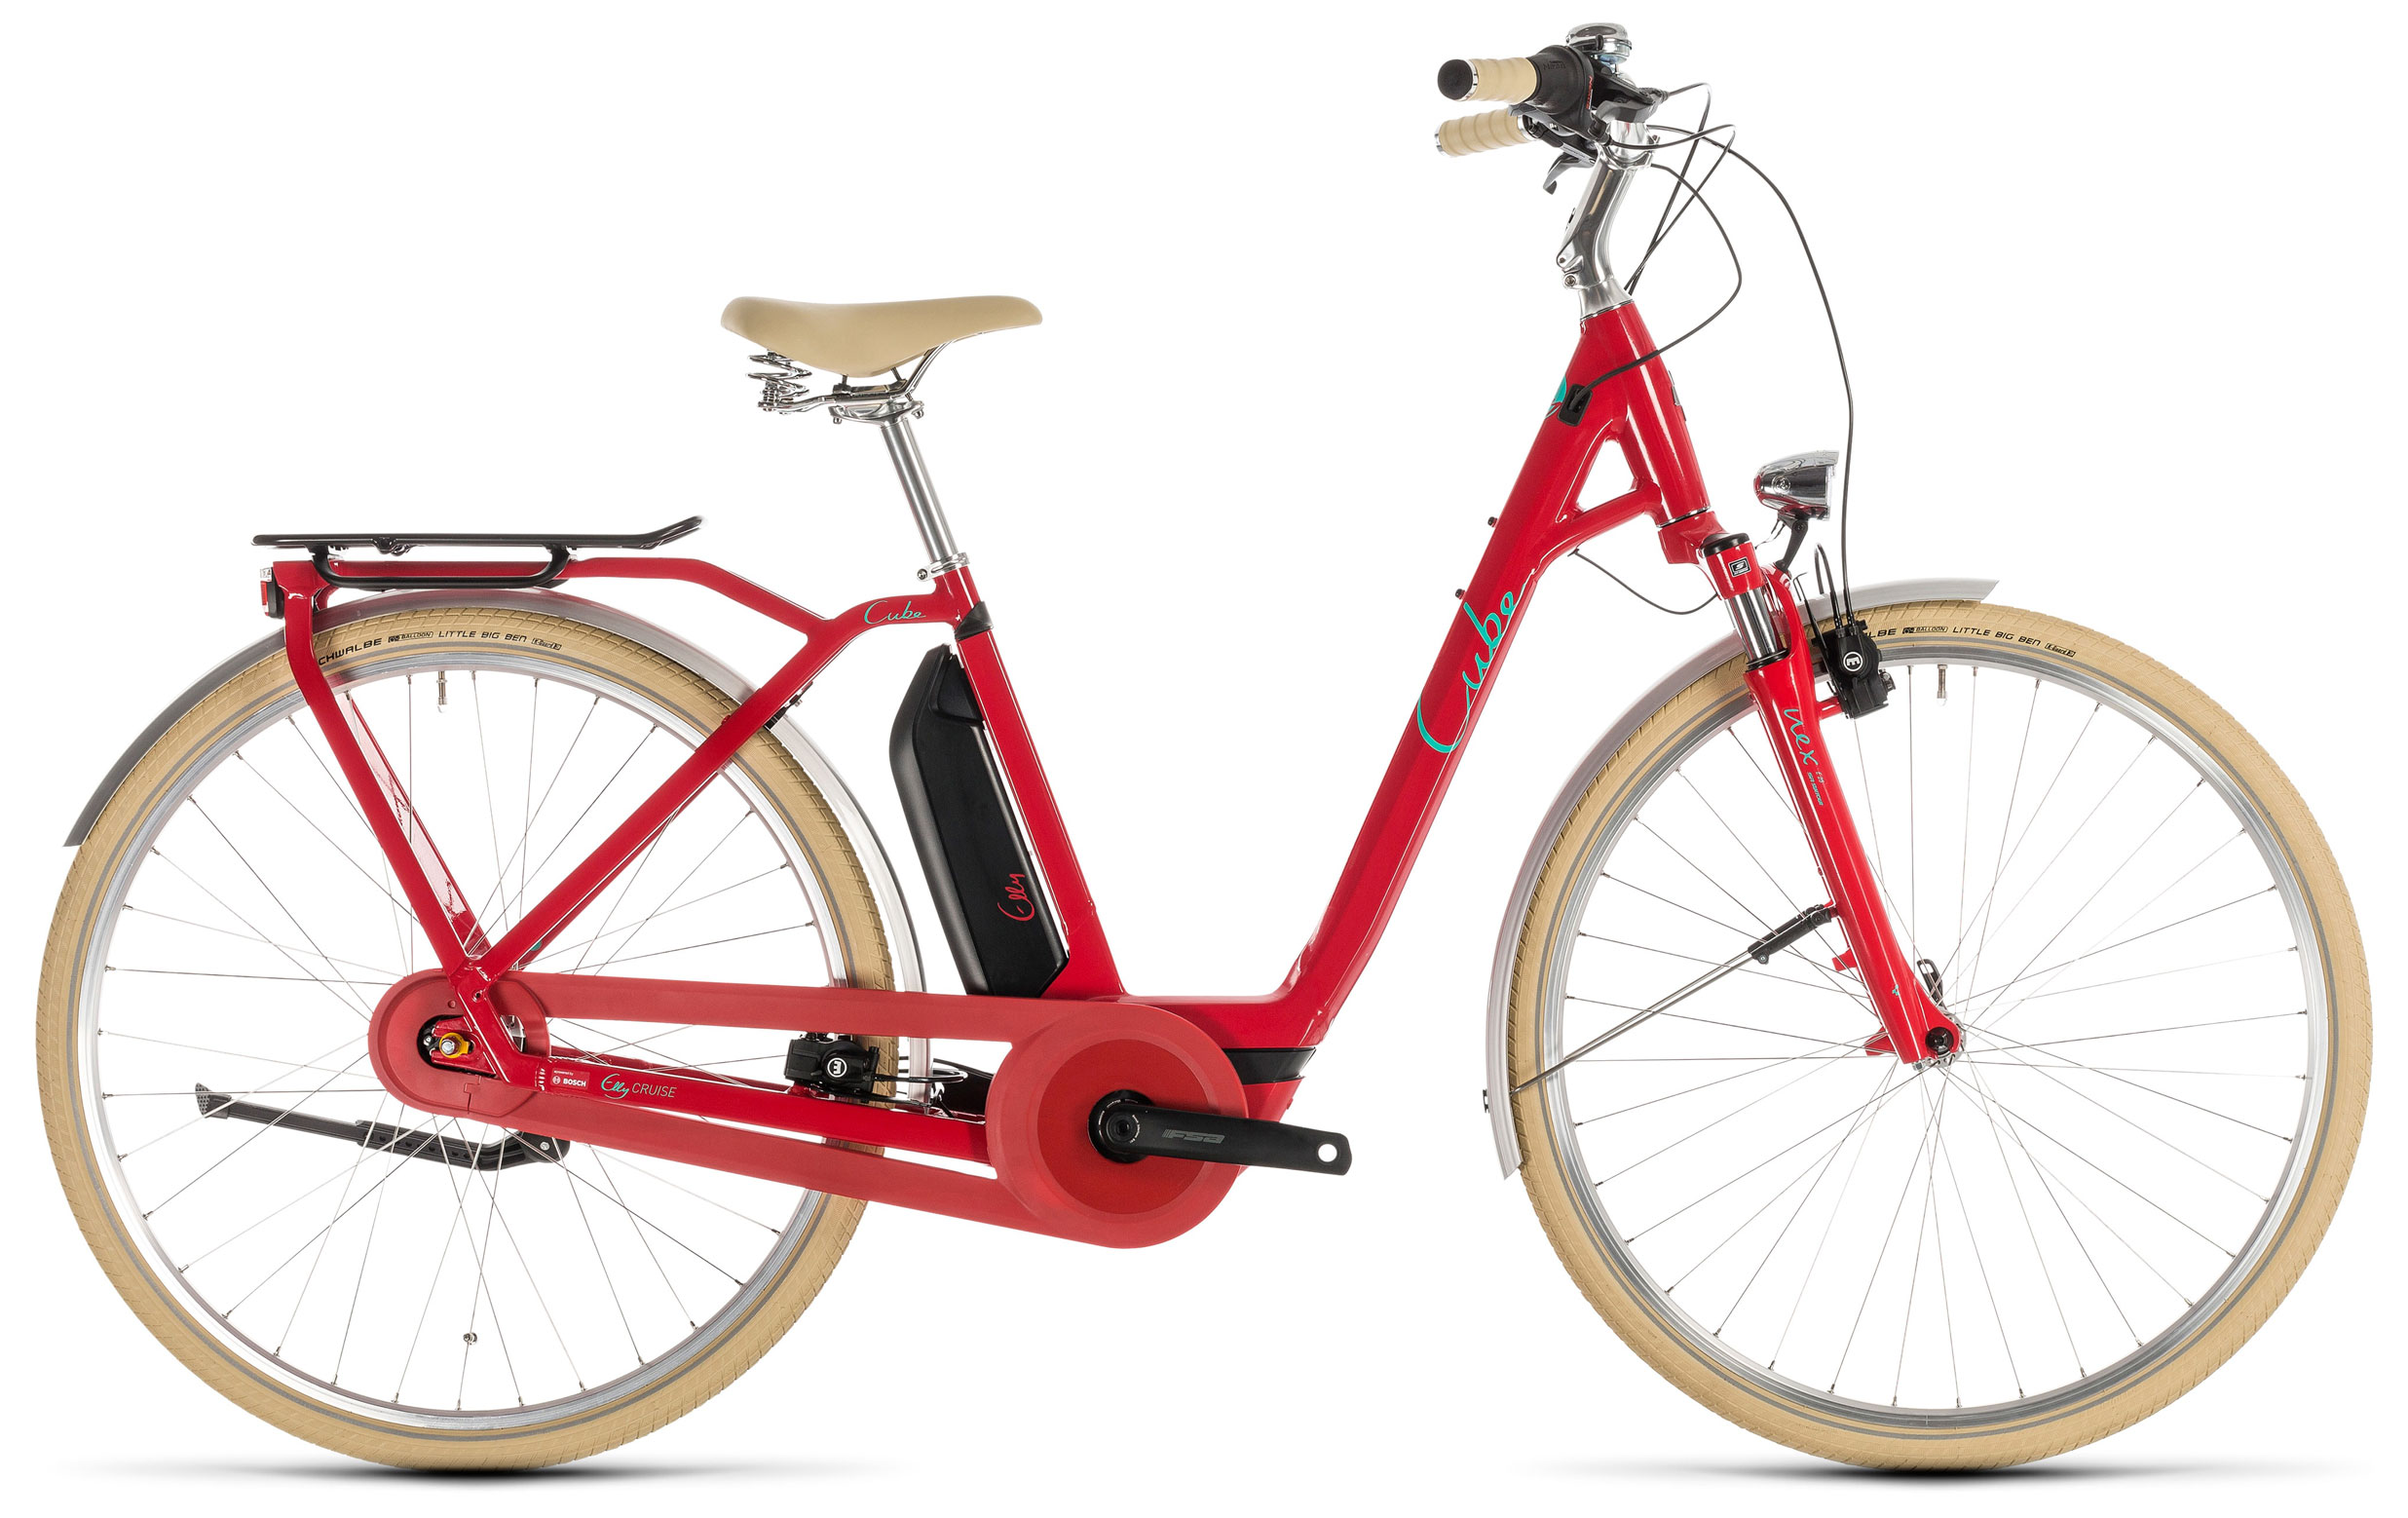  Велосипед трехколесный детский велосипед Cube Elly Cruise Hybrid 400 Easy Entry 2019